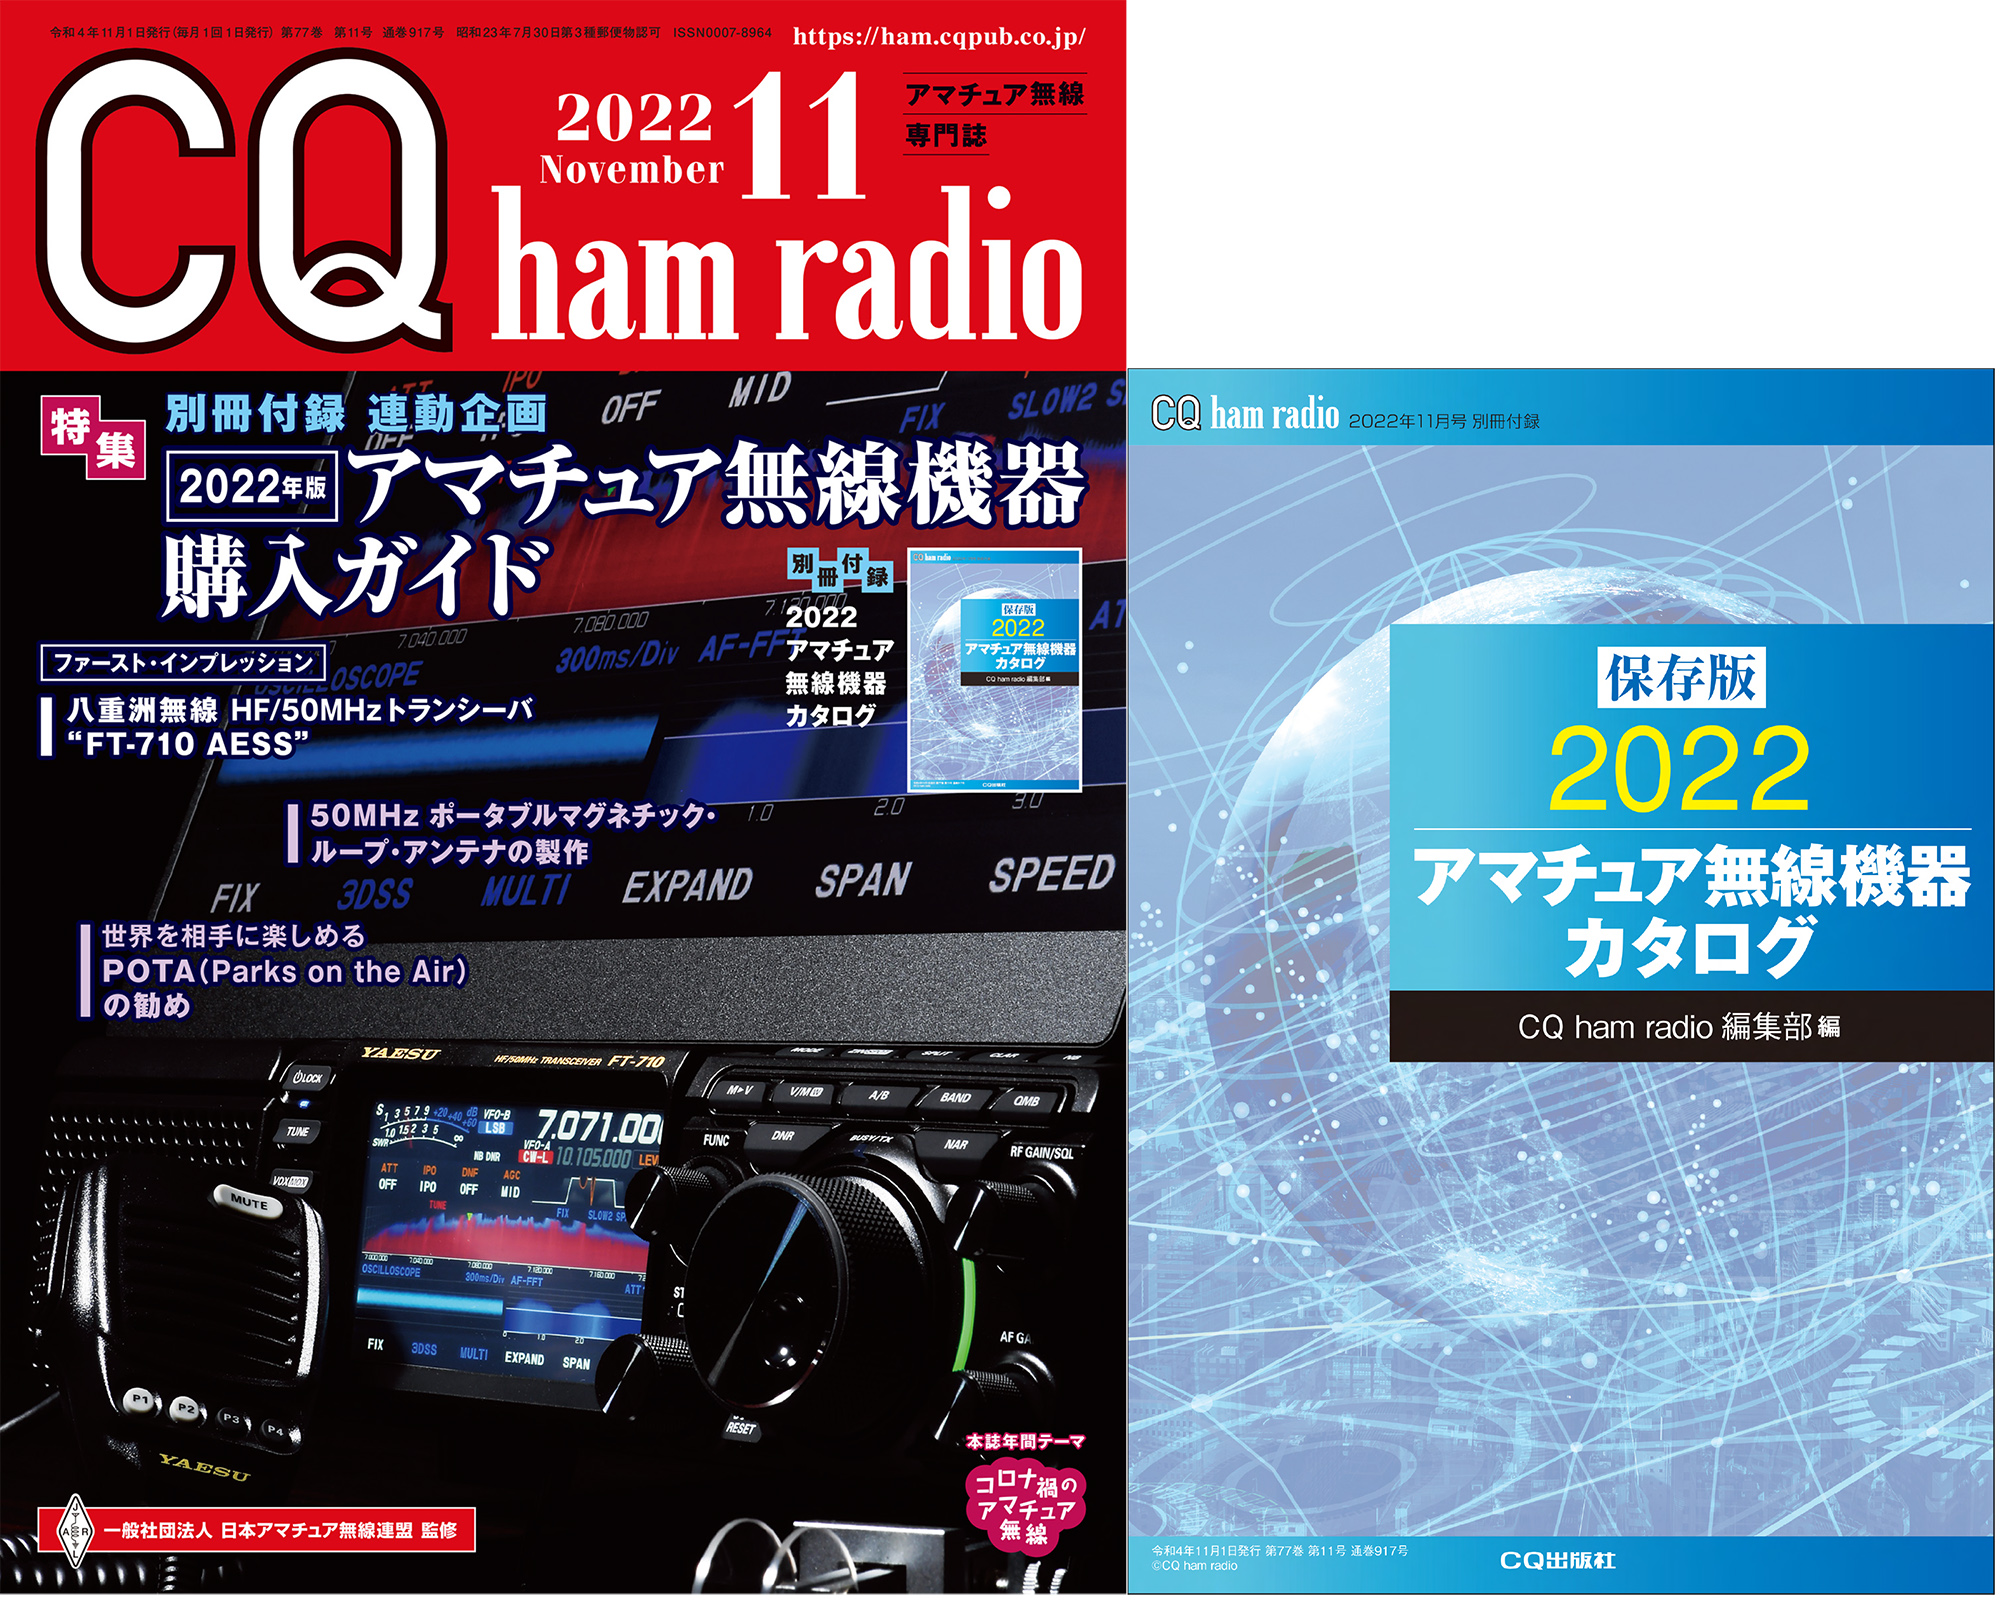 CQ ham radio 2022年 11月号